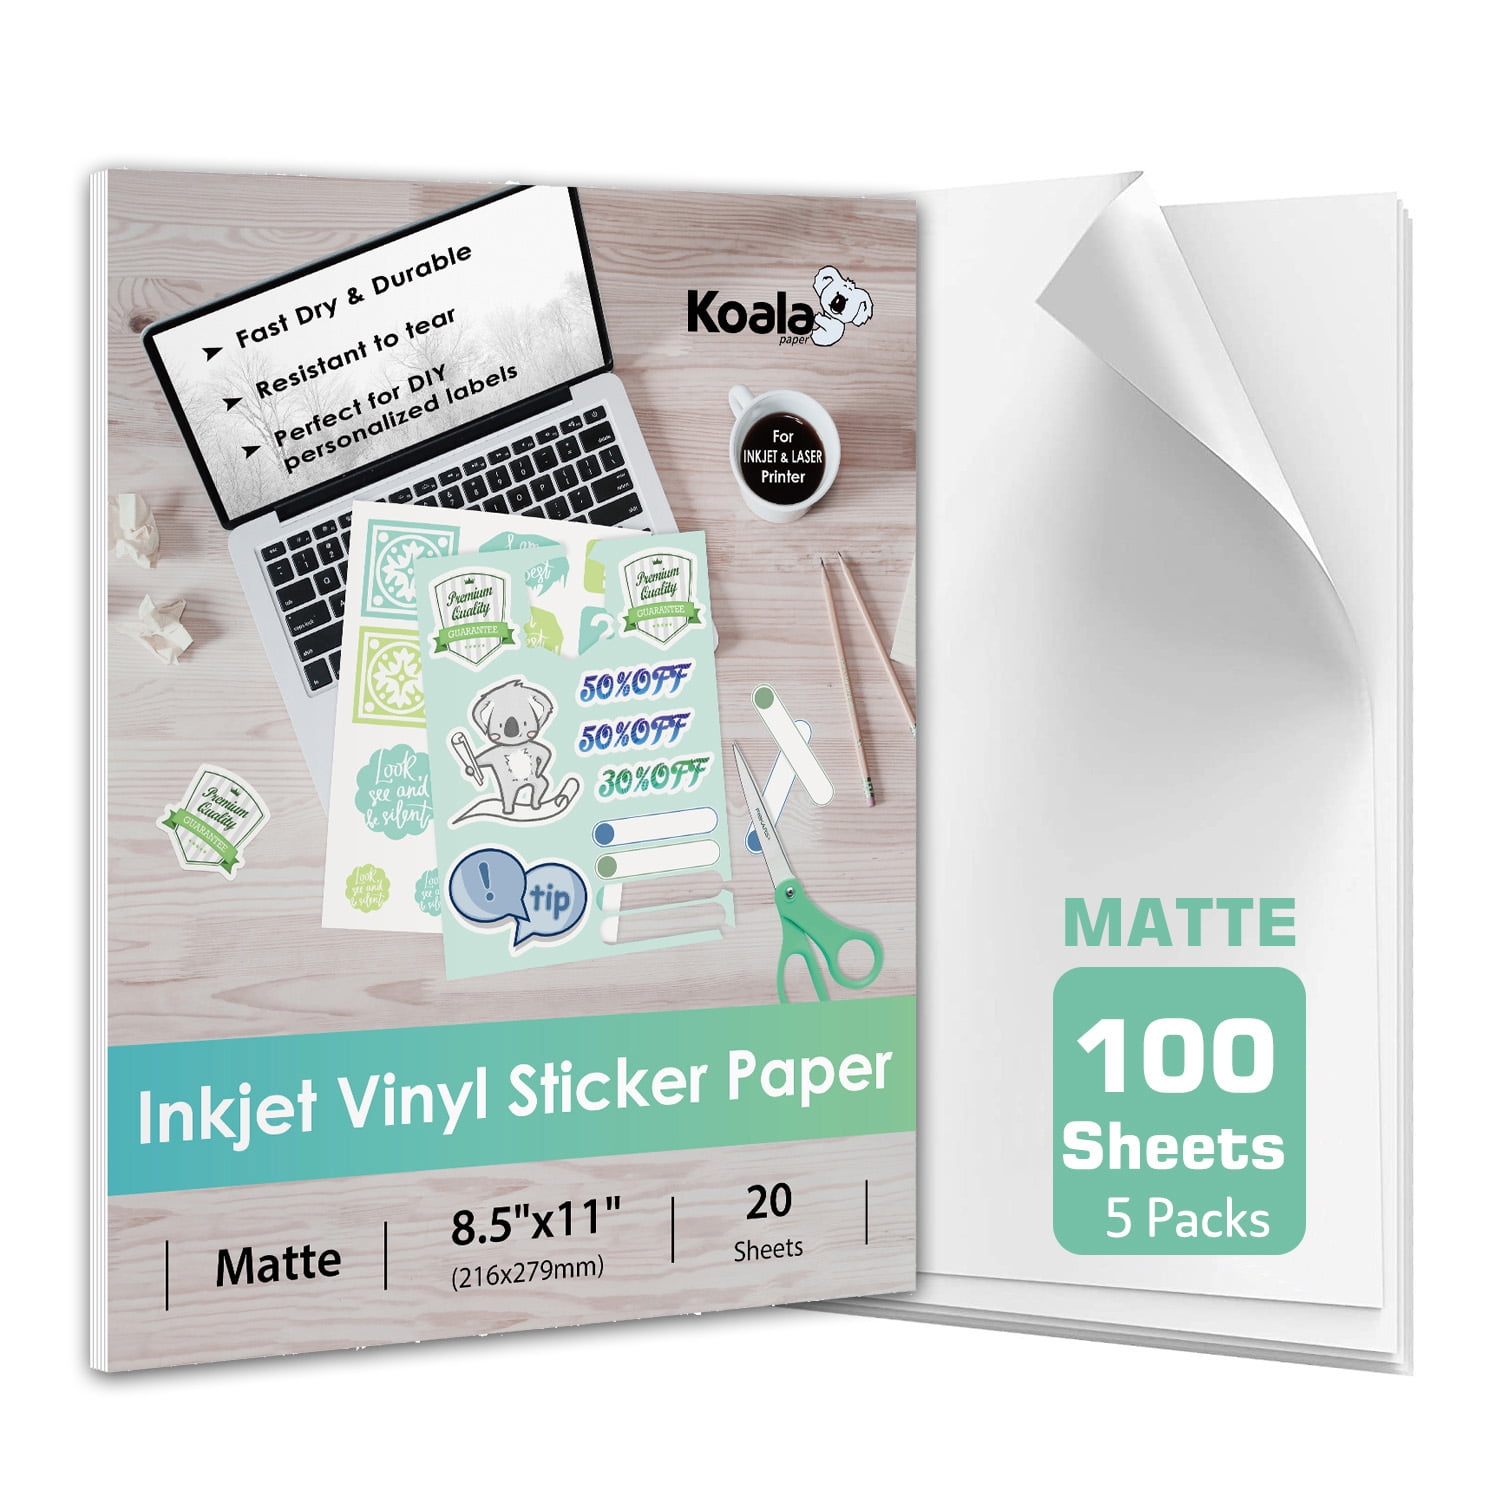 100 Sheets Koala Printable Vinyl Sticker Paper for Inkjet Printers